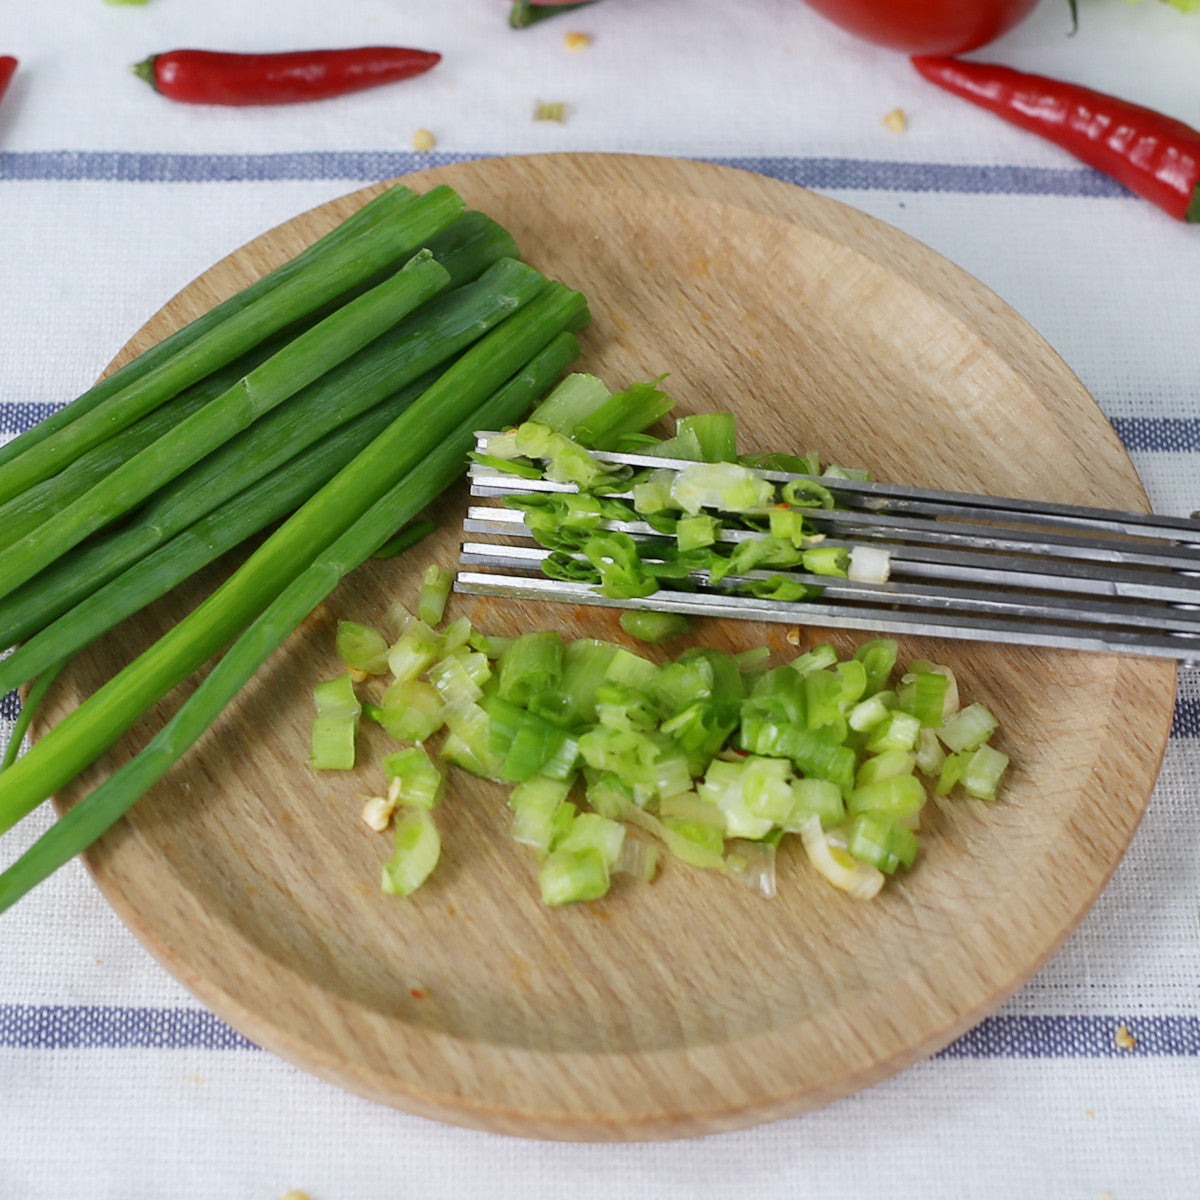 Scissors, 5 Blade Herb – The Convenient Kitchen